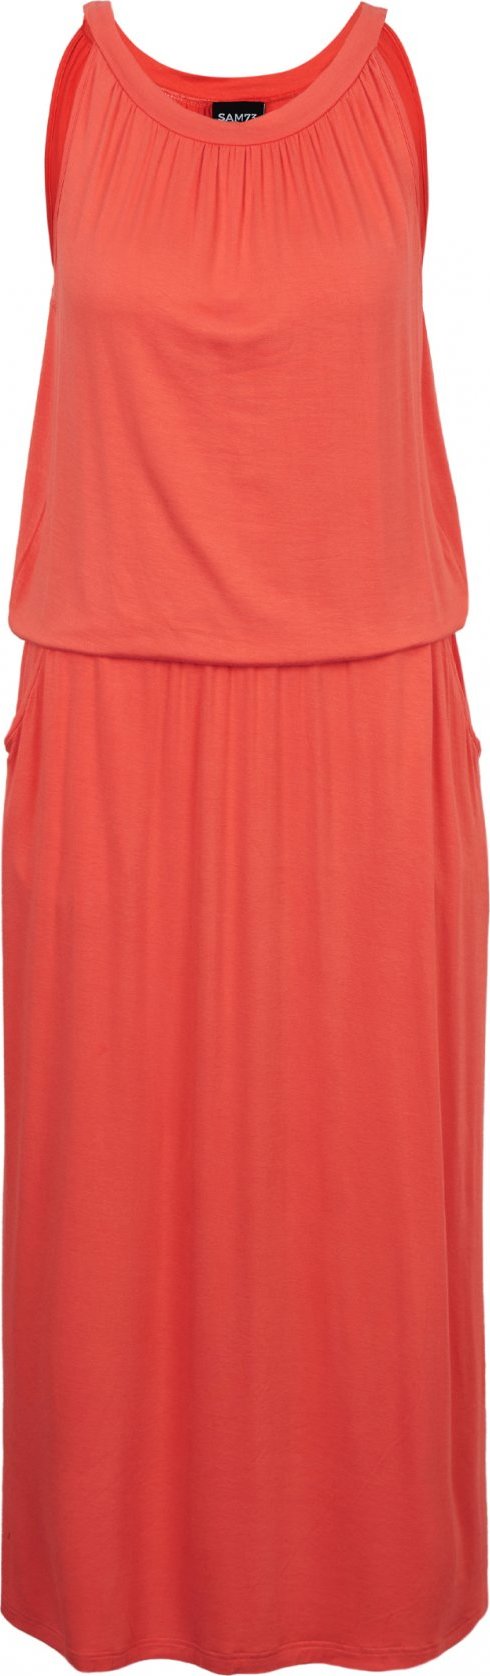 Dámské šaty SAM 73 Dita oranžové Velikost: XL